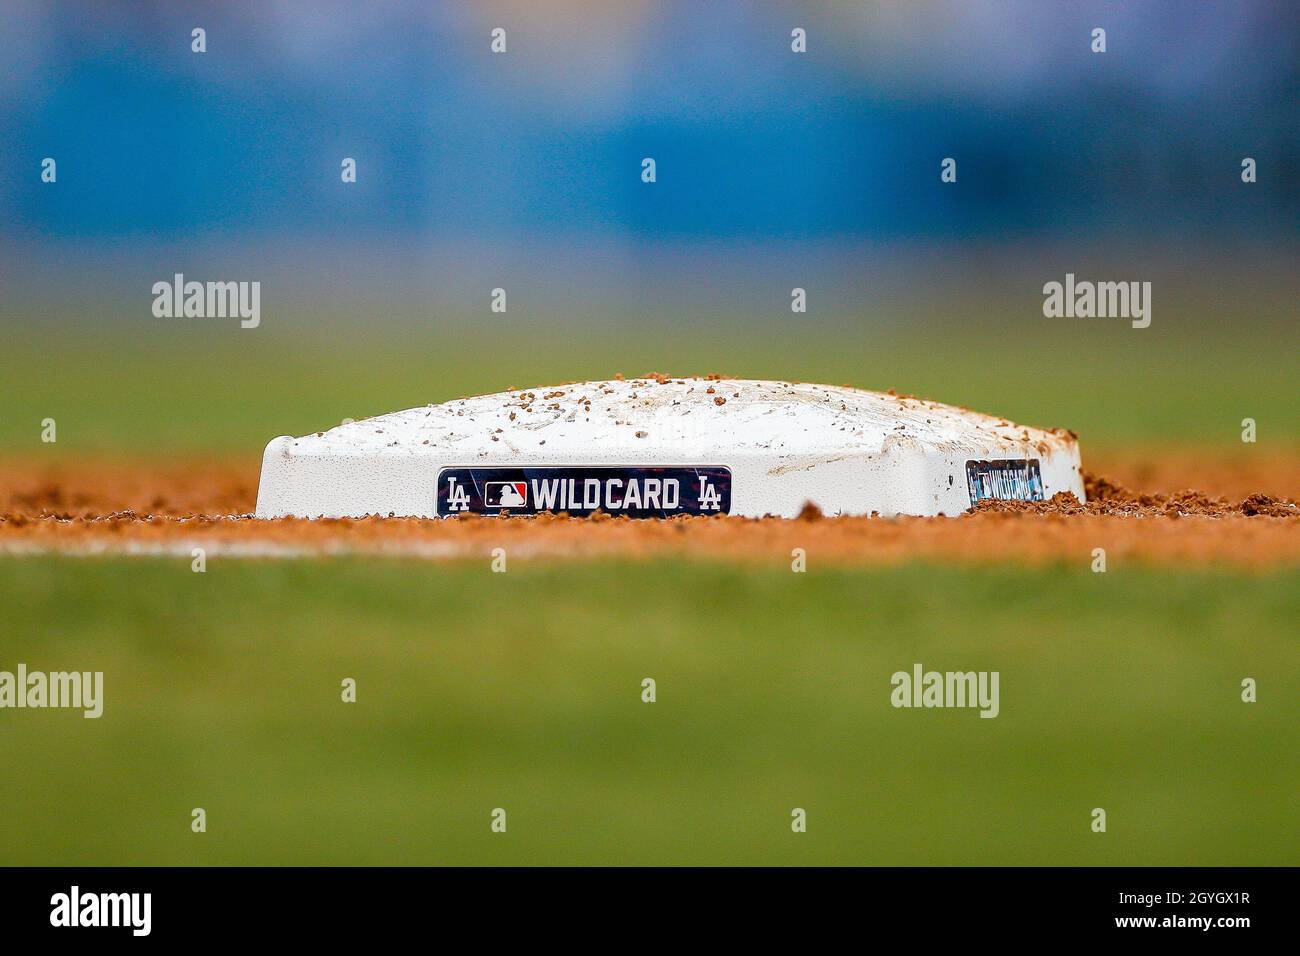 Vue détaillée de la première base lors d'un match de la MLB National League Wild Card entre les St. Louis Cardinals et les Los Angeles Dodgers, mercredi, octobre Banque D'Images